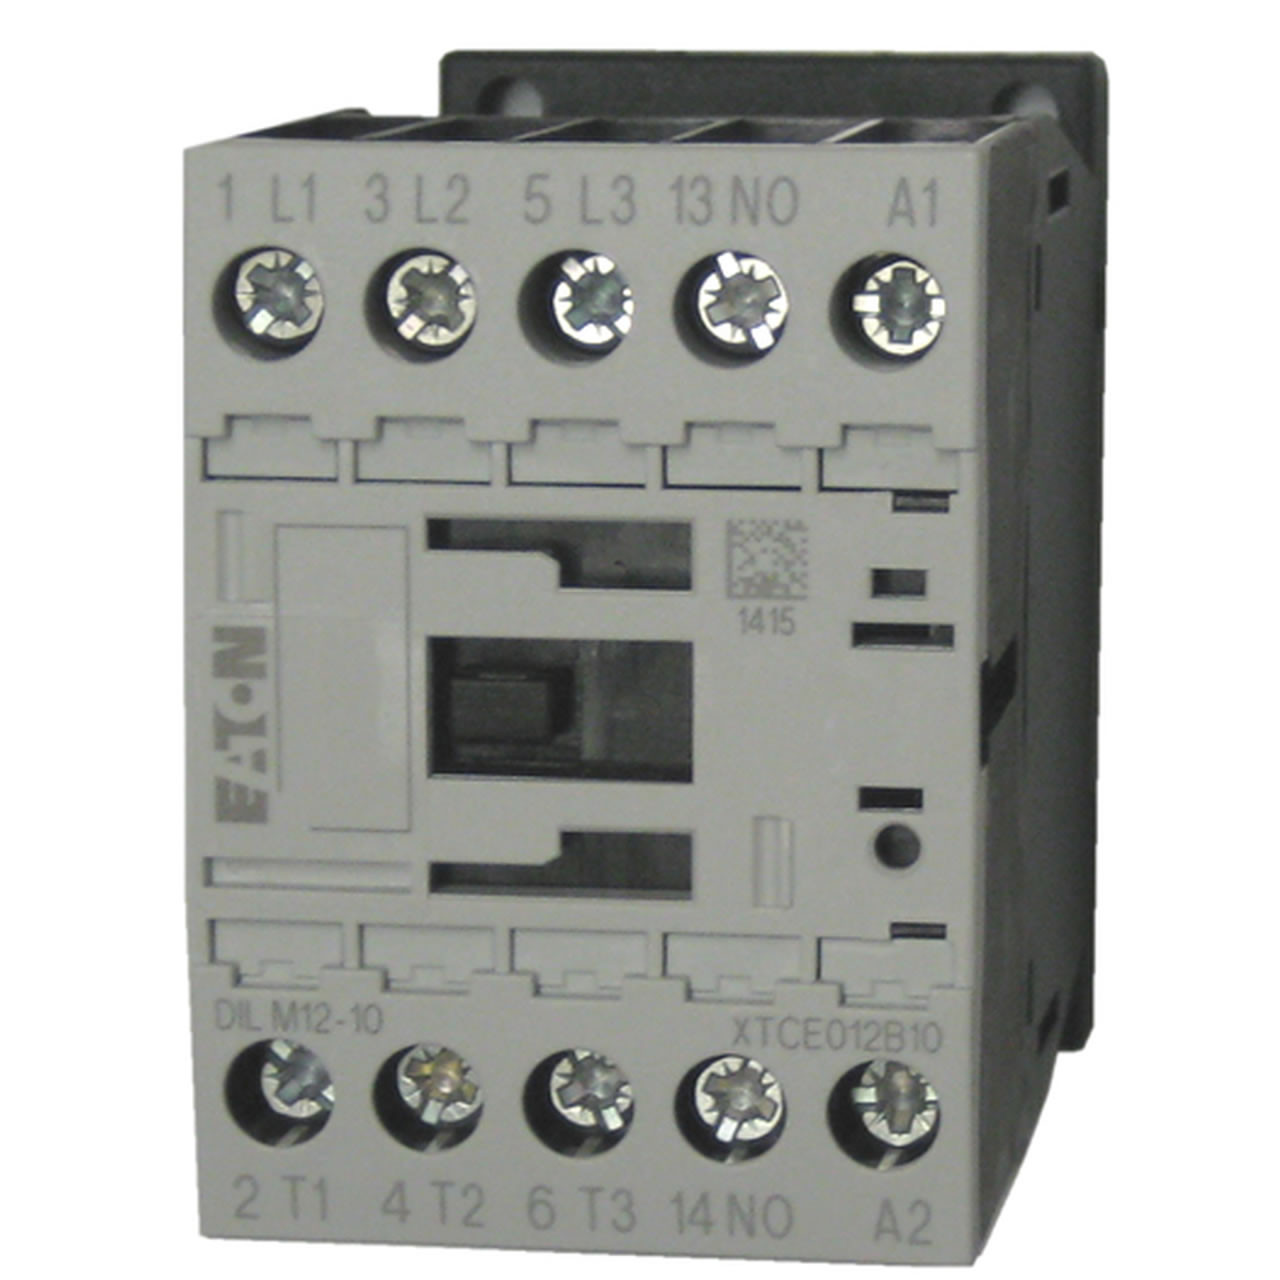 Eaton/Moeller DILM12-10 220 volt contactor